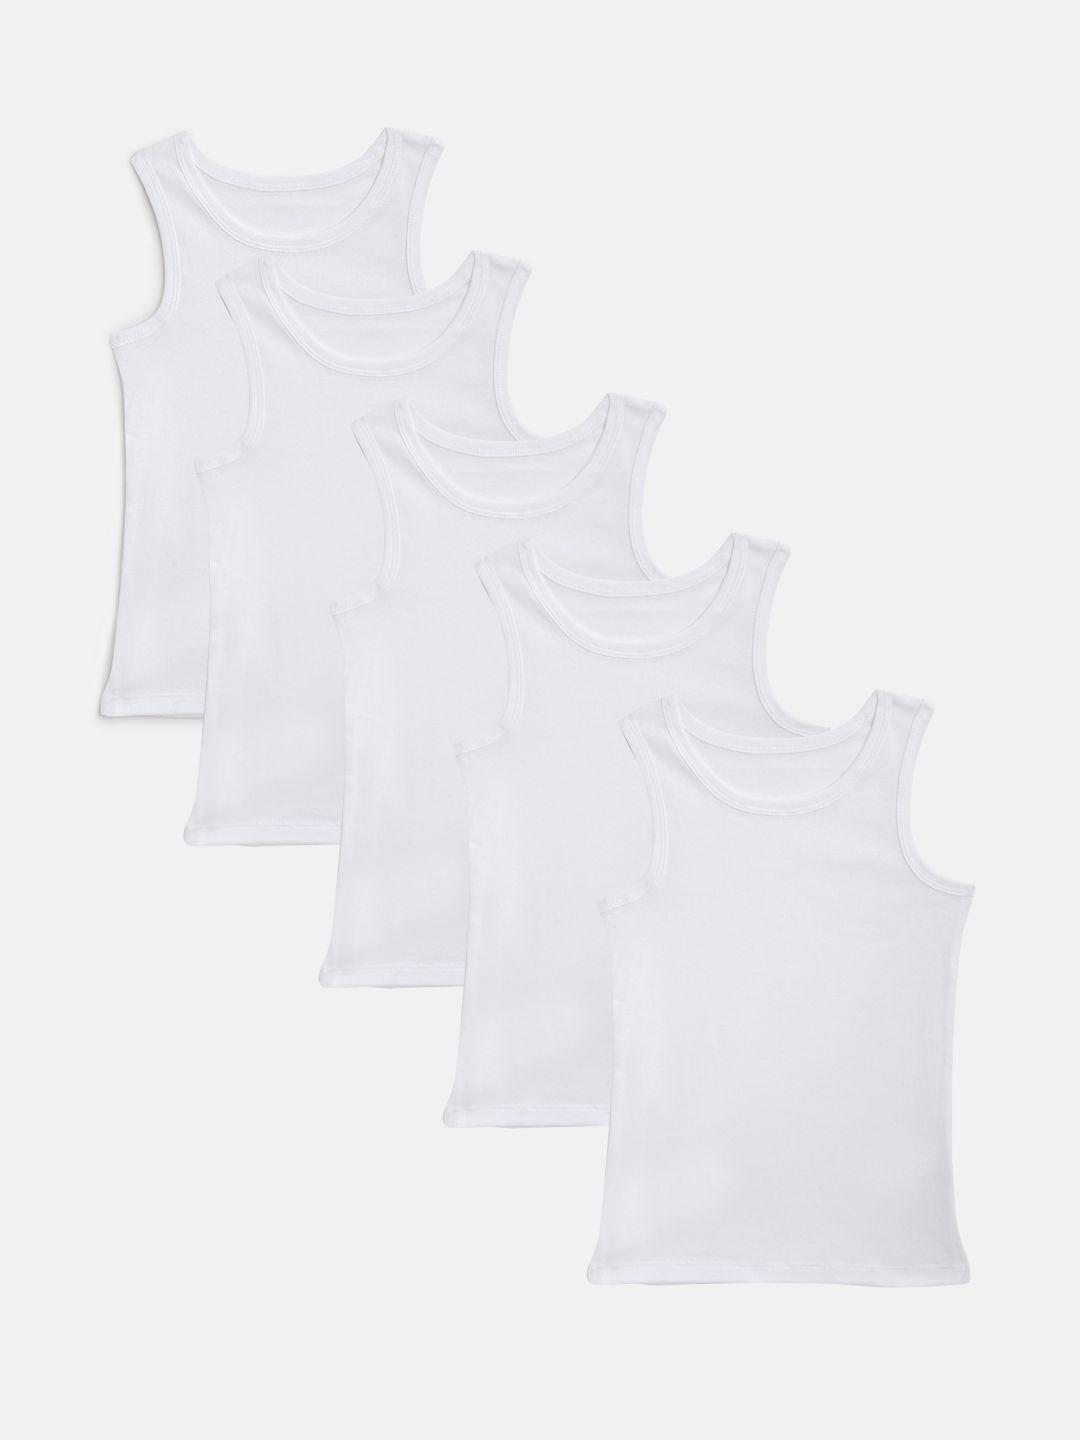 marks & spencer boys pack of 5 white solid innerwear vests t711406v